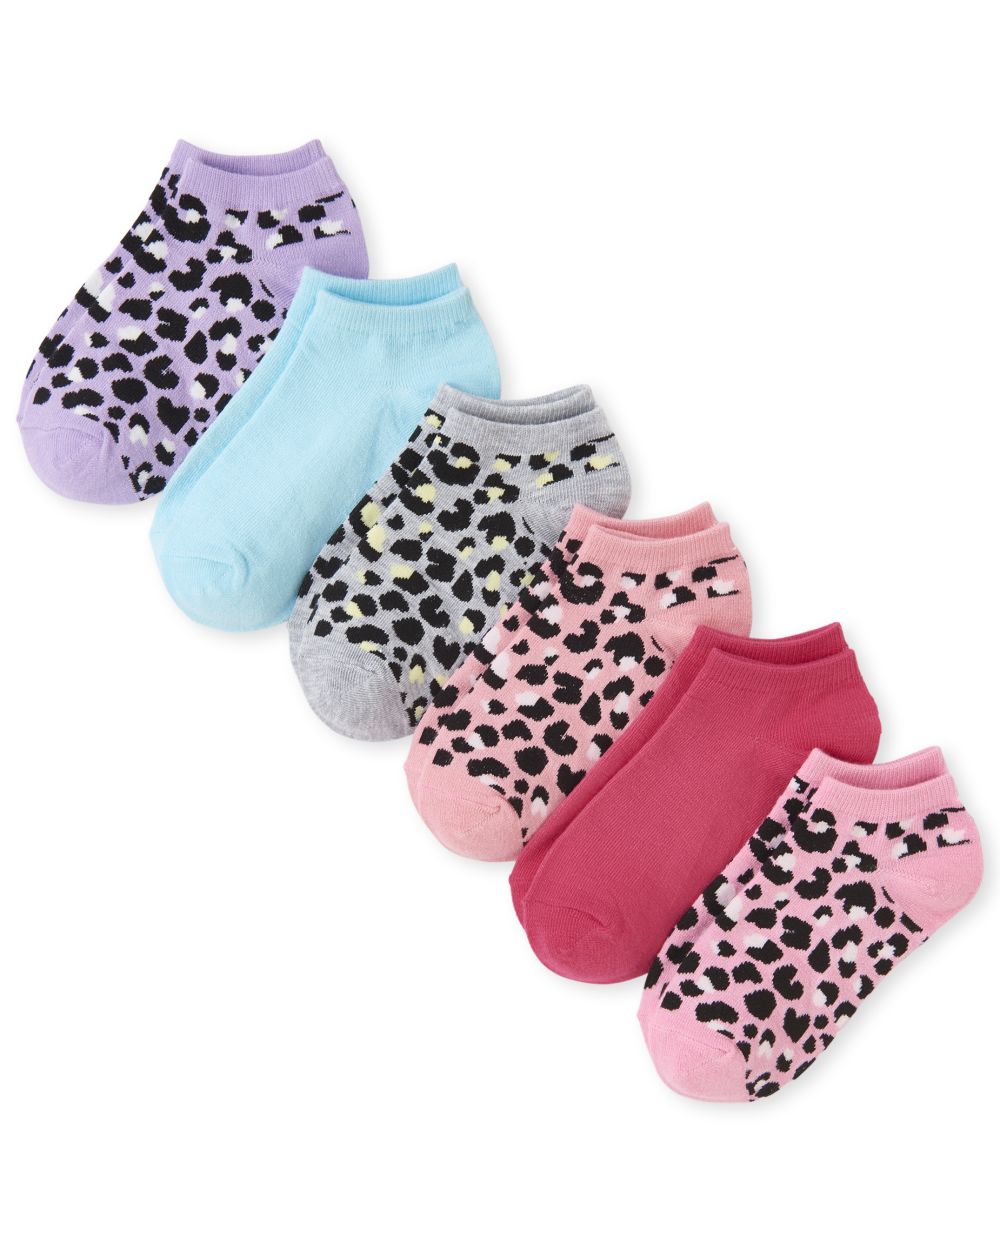 Girls Leopard Print Ankle Socks 6-Pack